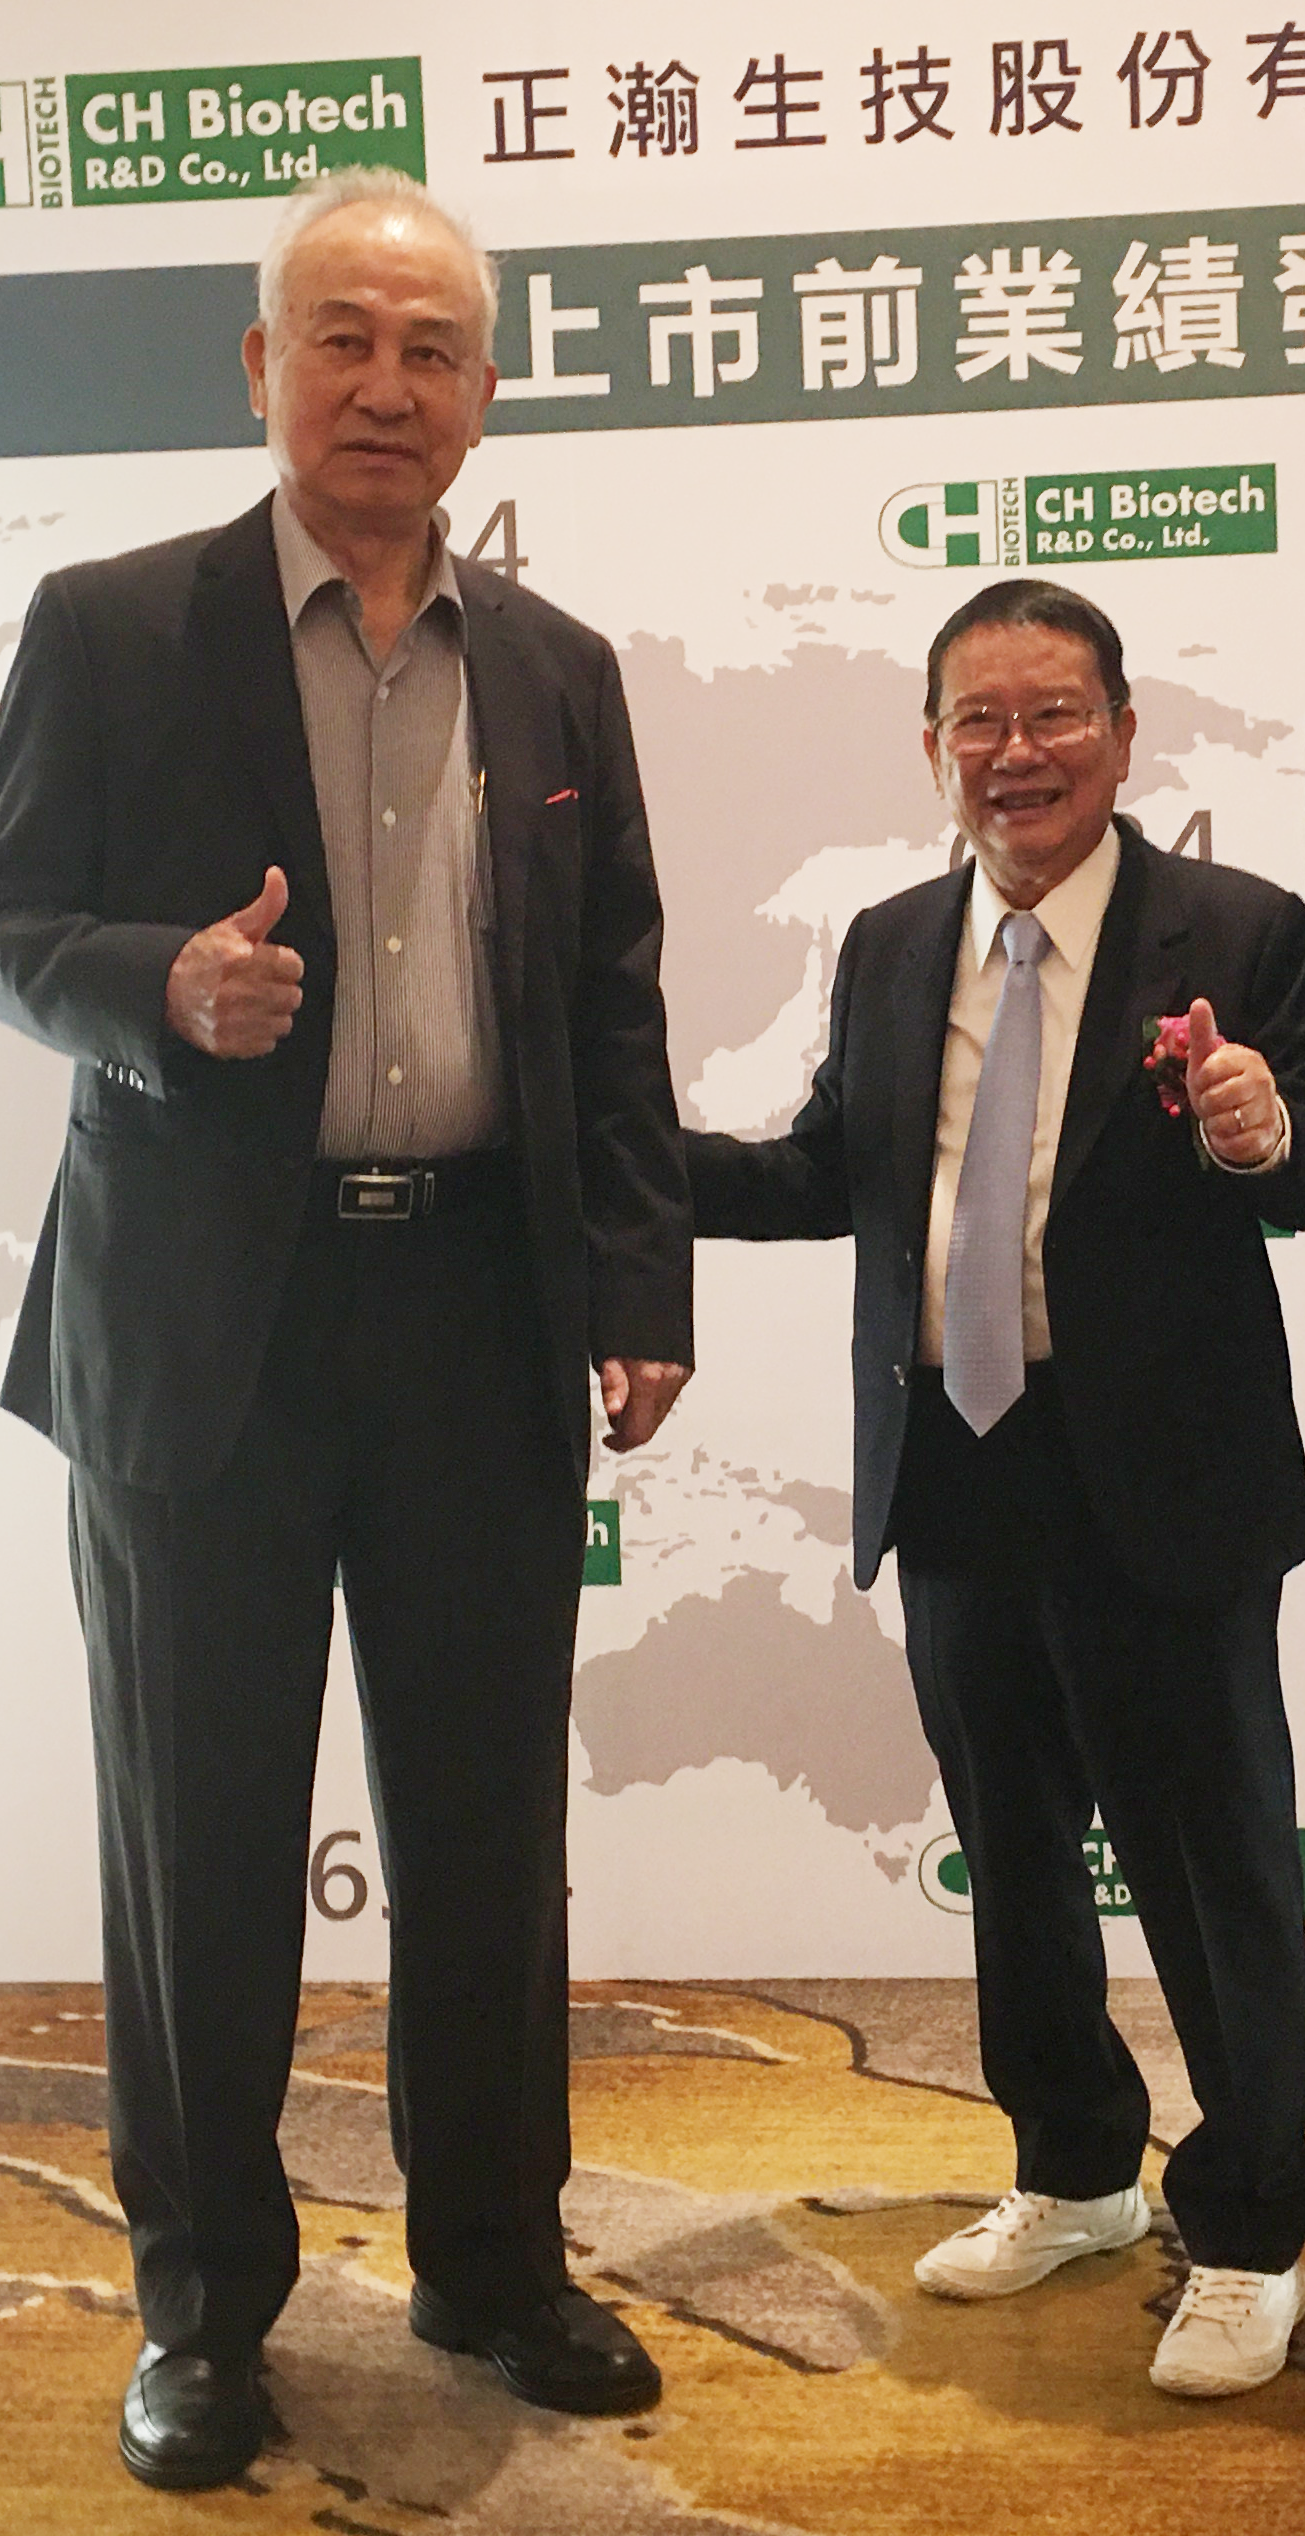 總 統 府 資 政 、 台 杉 投 資 董 事 長 吳 榮 義 前 來 恭 賀 正 瀚 業 績 發 表 會 ( 左 ) 與 董 事 長 吳 正 邦 合 影 。 